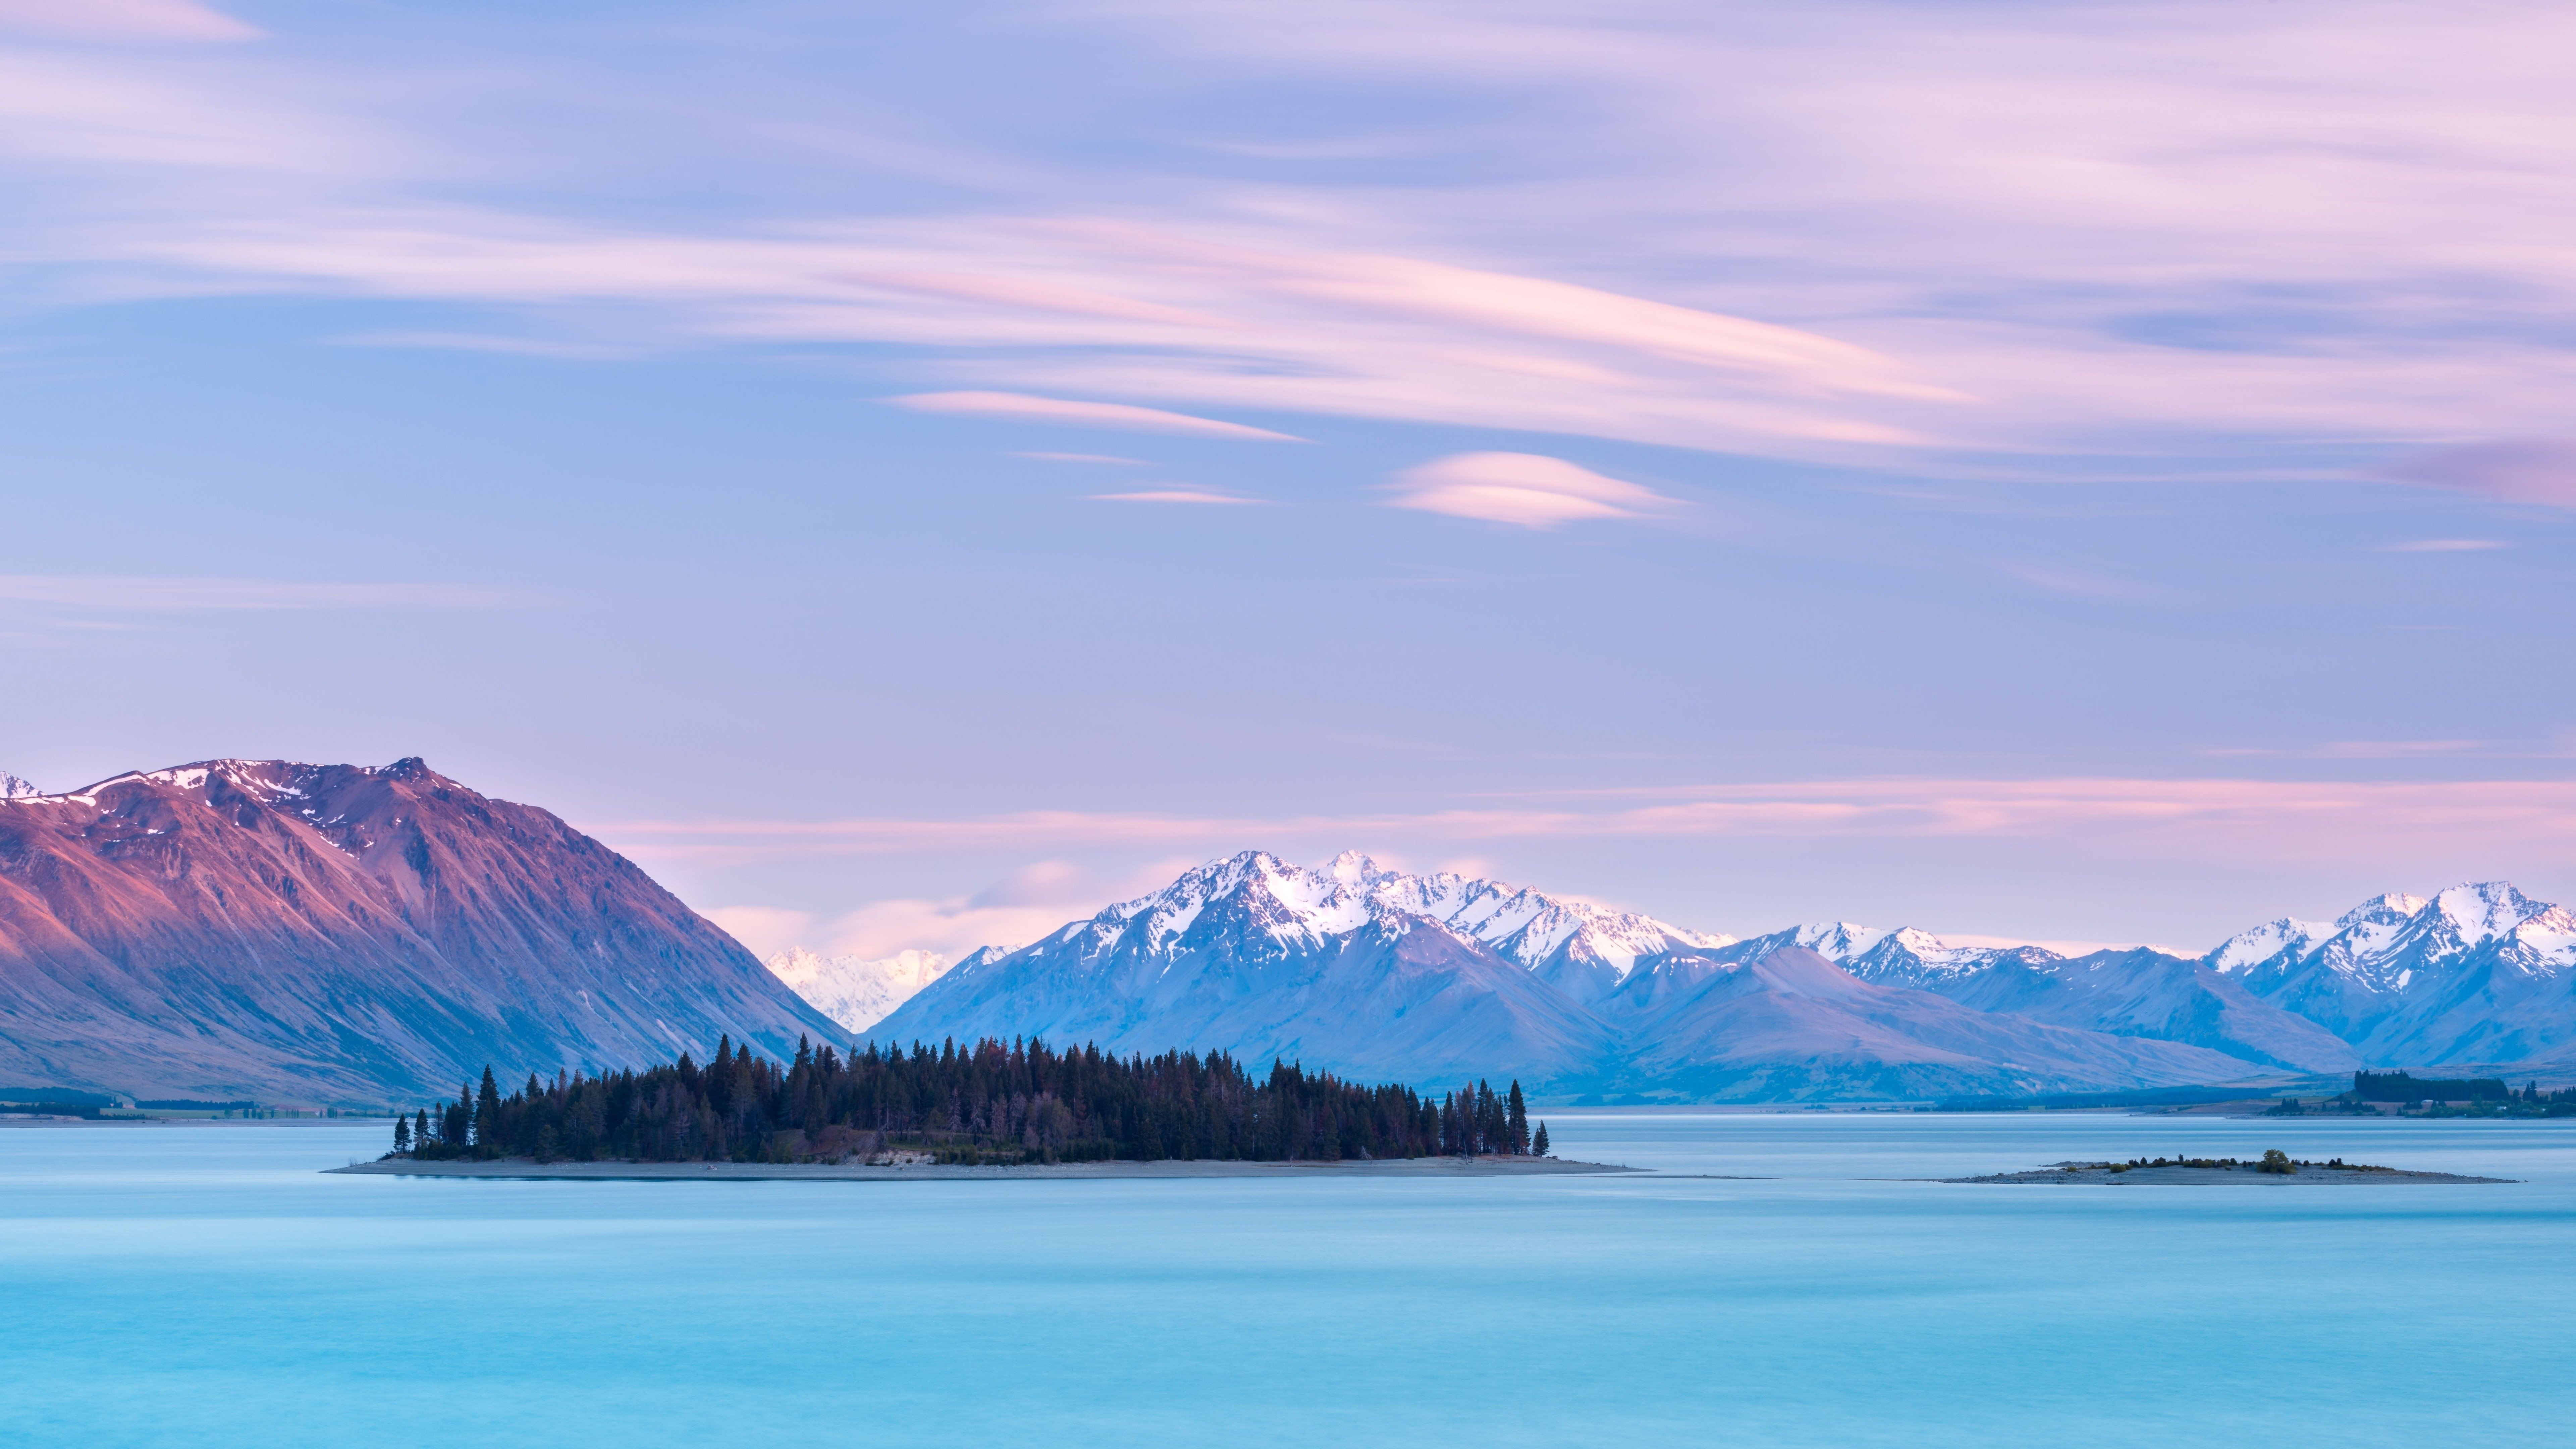 Fondos de pantalla Lago Tekapo en las montañas de Nueva Zelanda